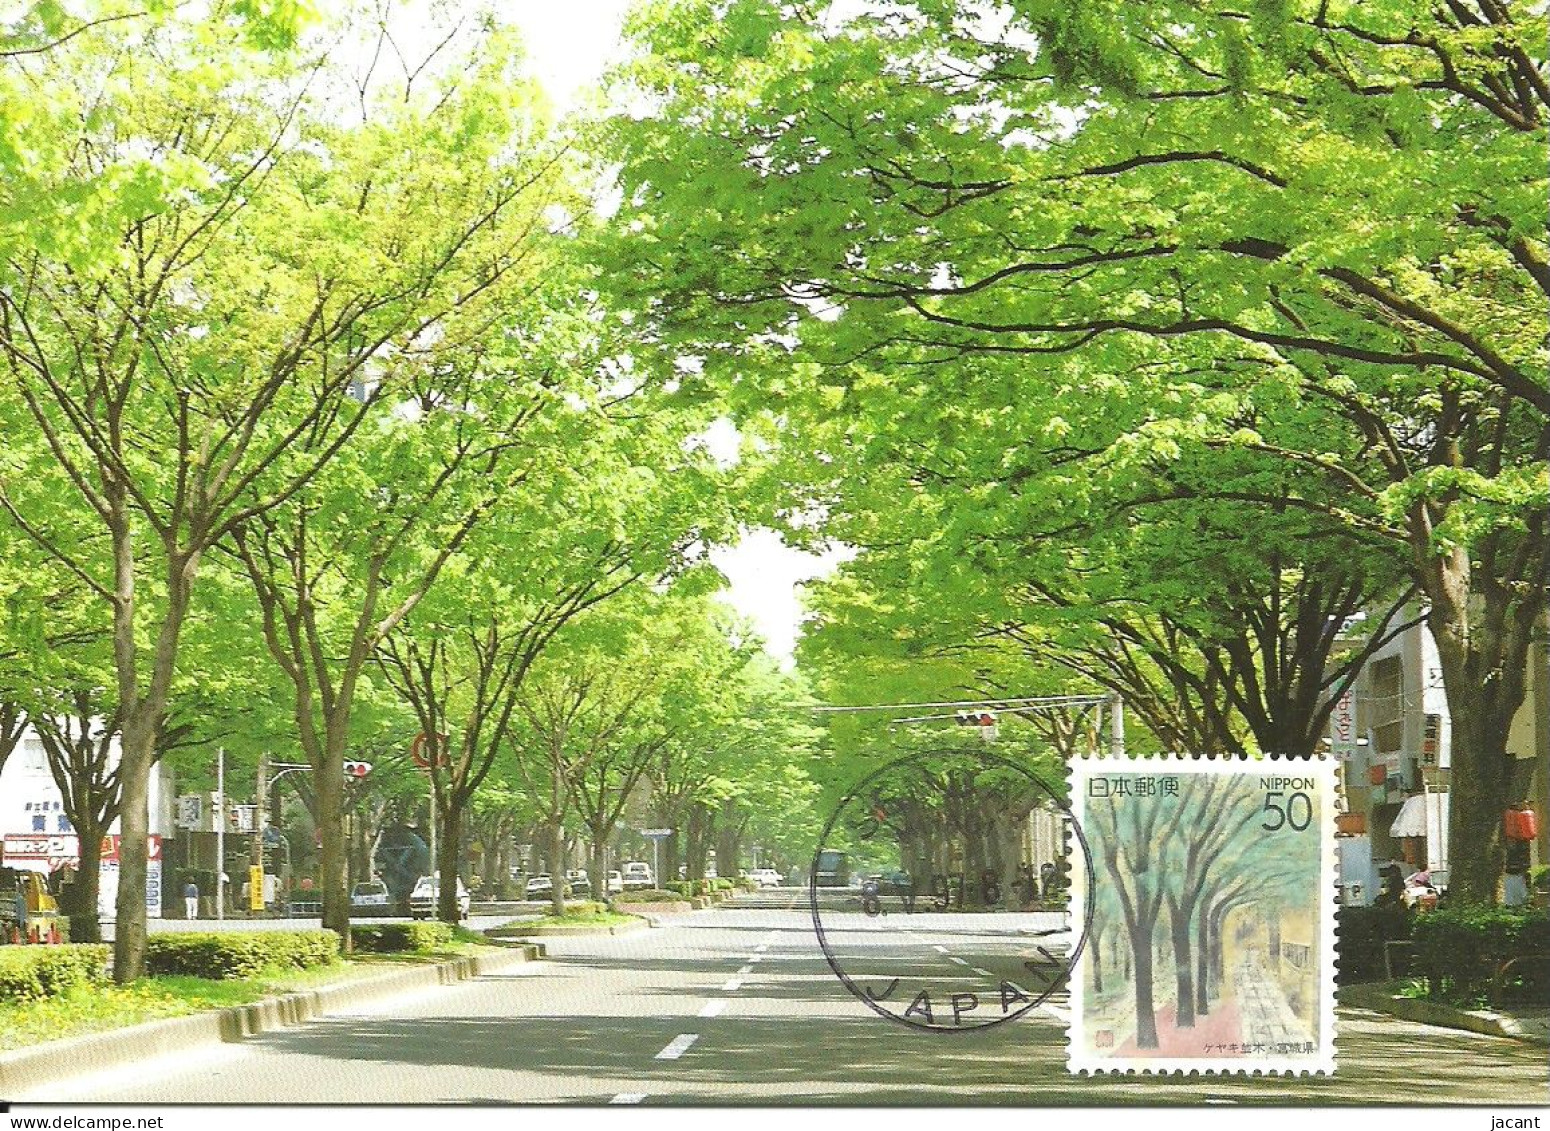 Carte Maximum - Japan - Arbres - Trees In Street - Sendai - Maximumkaarten